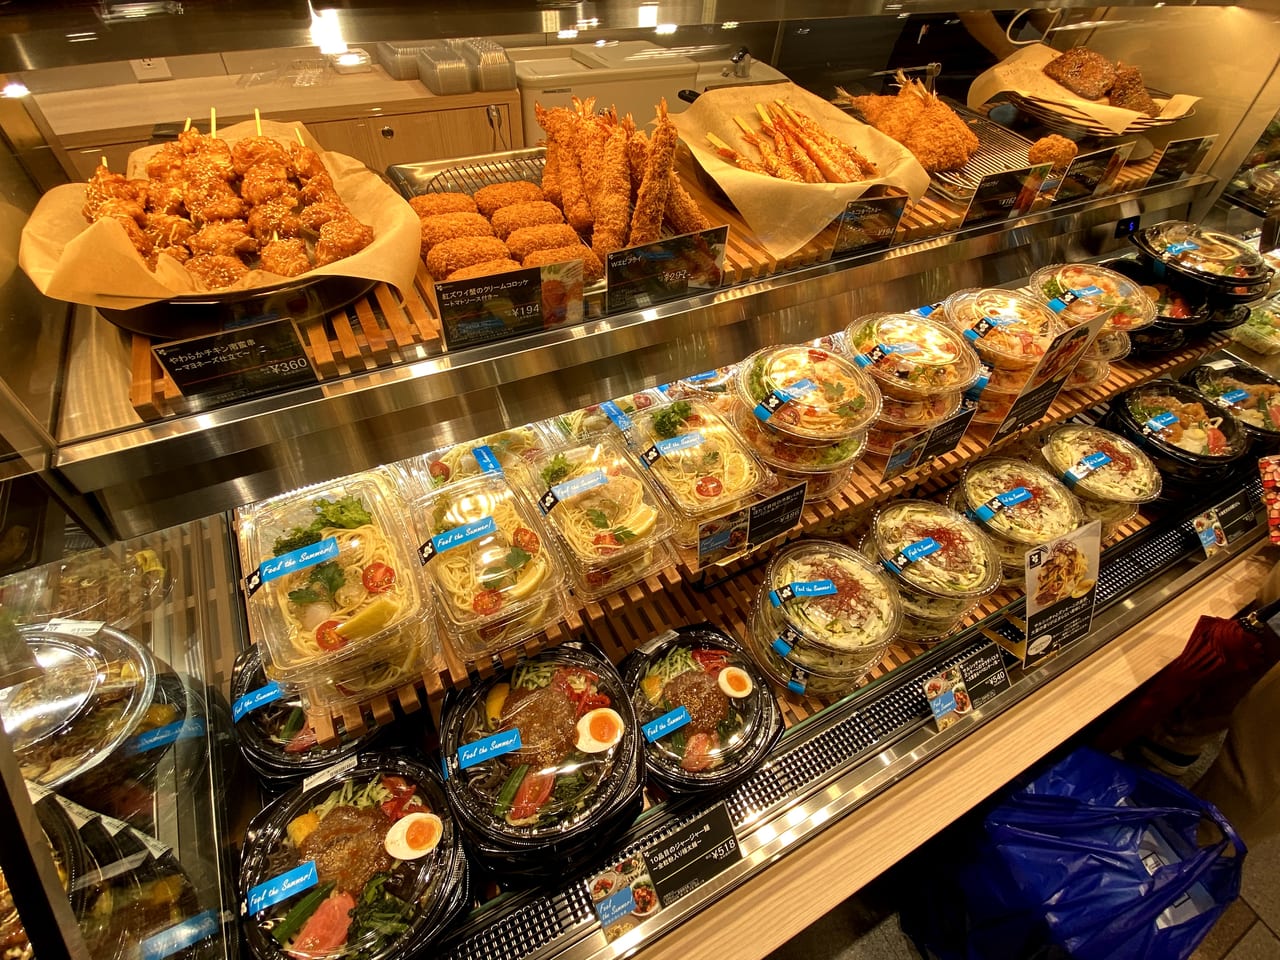 足立区 4月23日 北千住マルイの地下1階にオープンした Eashion 彩り豊かなお惣菜やお弁当が並んでいます 号外net 足立区